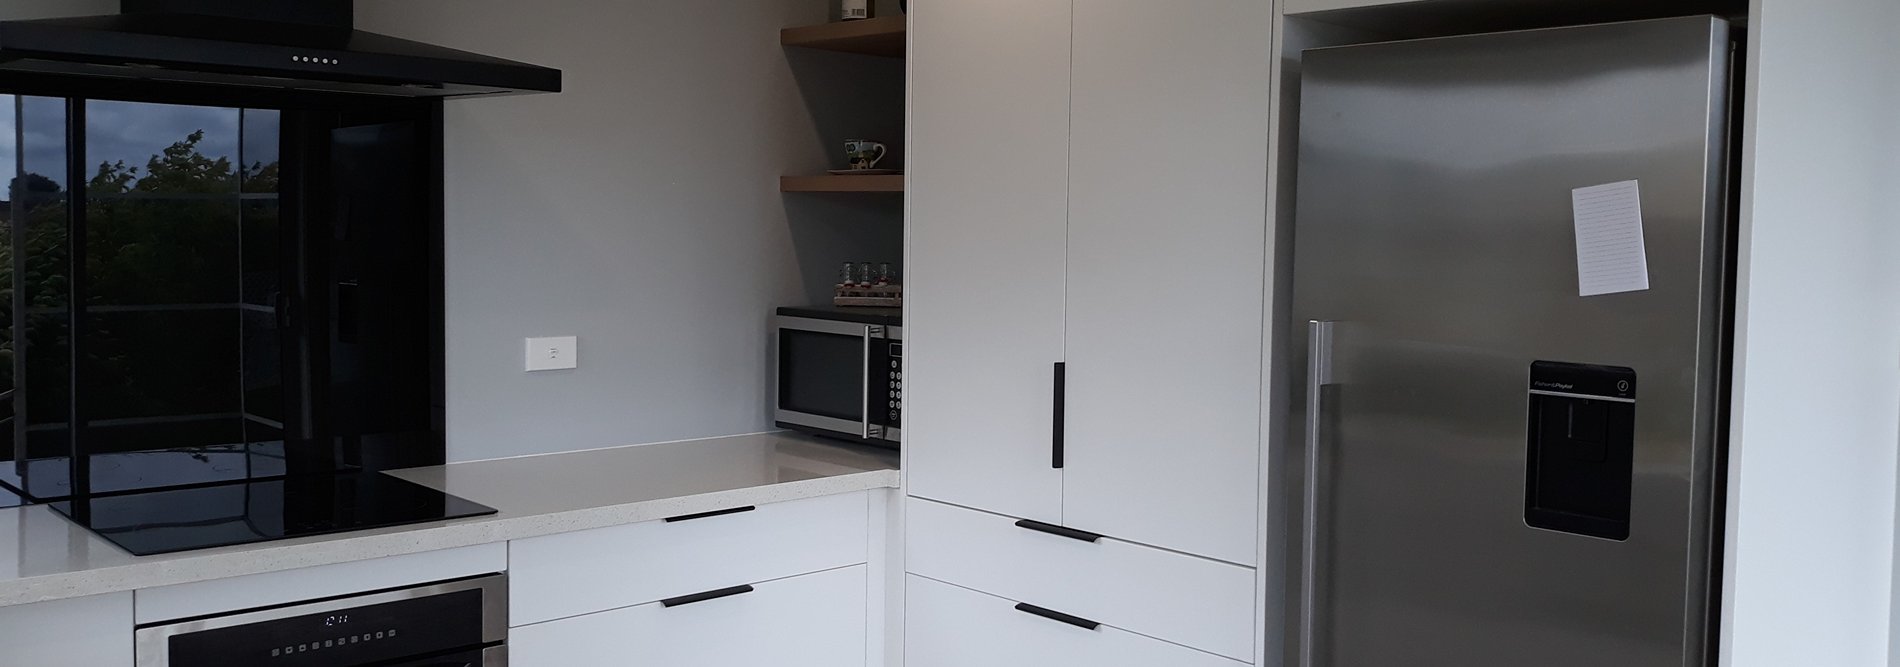 Minimalist kitchen design with kitchen appliances